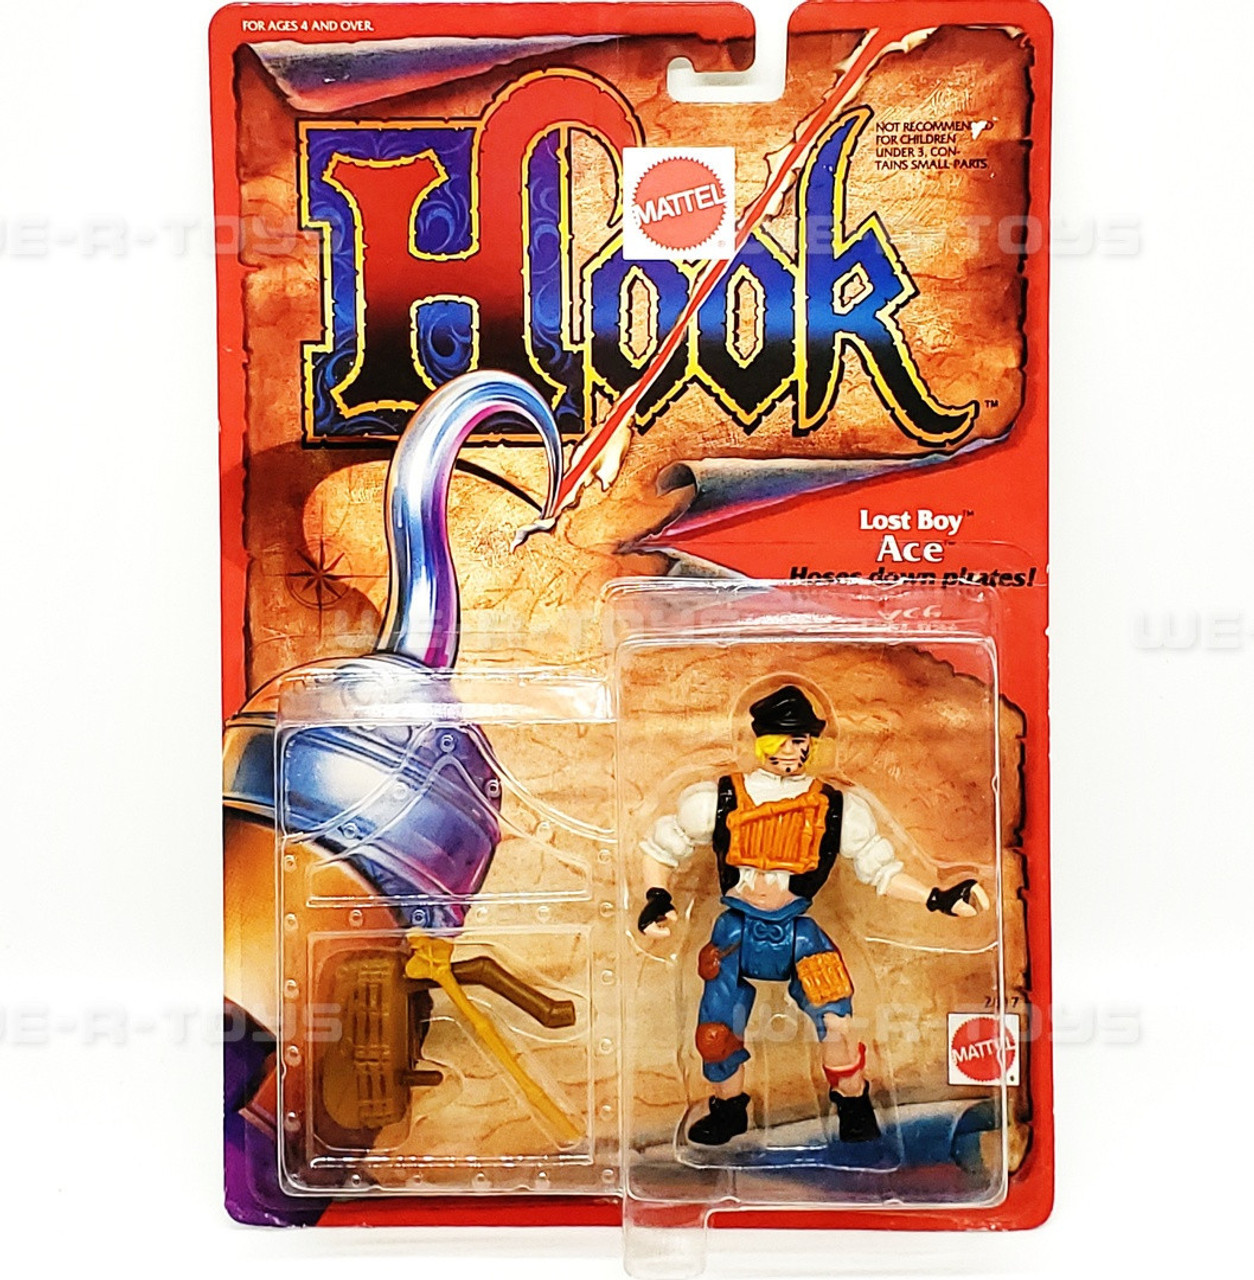 Mattel 1991 Hook Lost Boy Ace Hoses Down Pirates Action Figure Moc